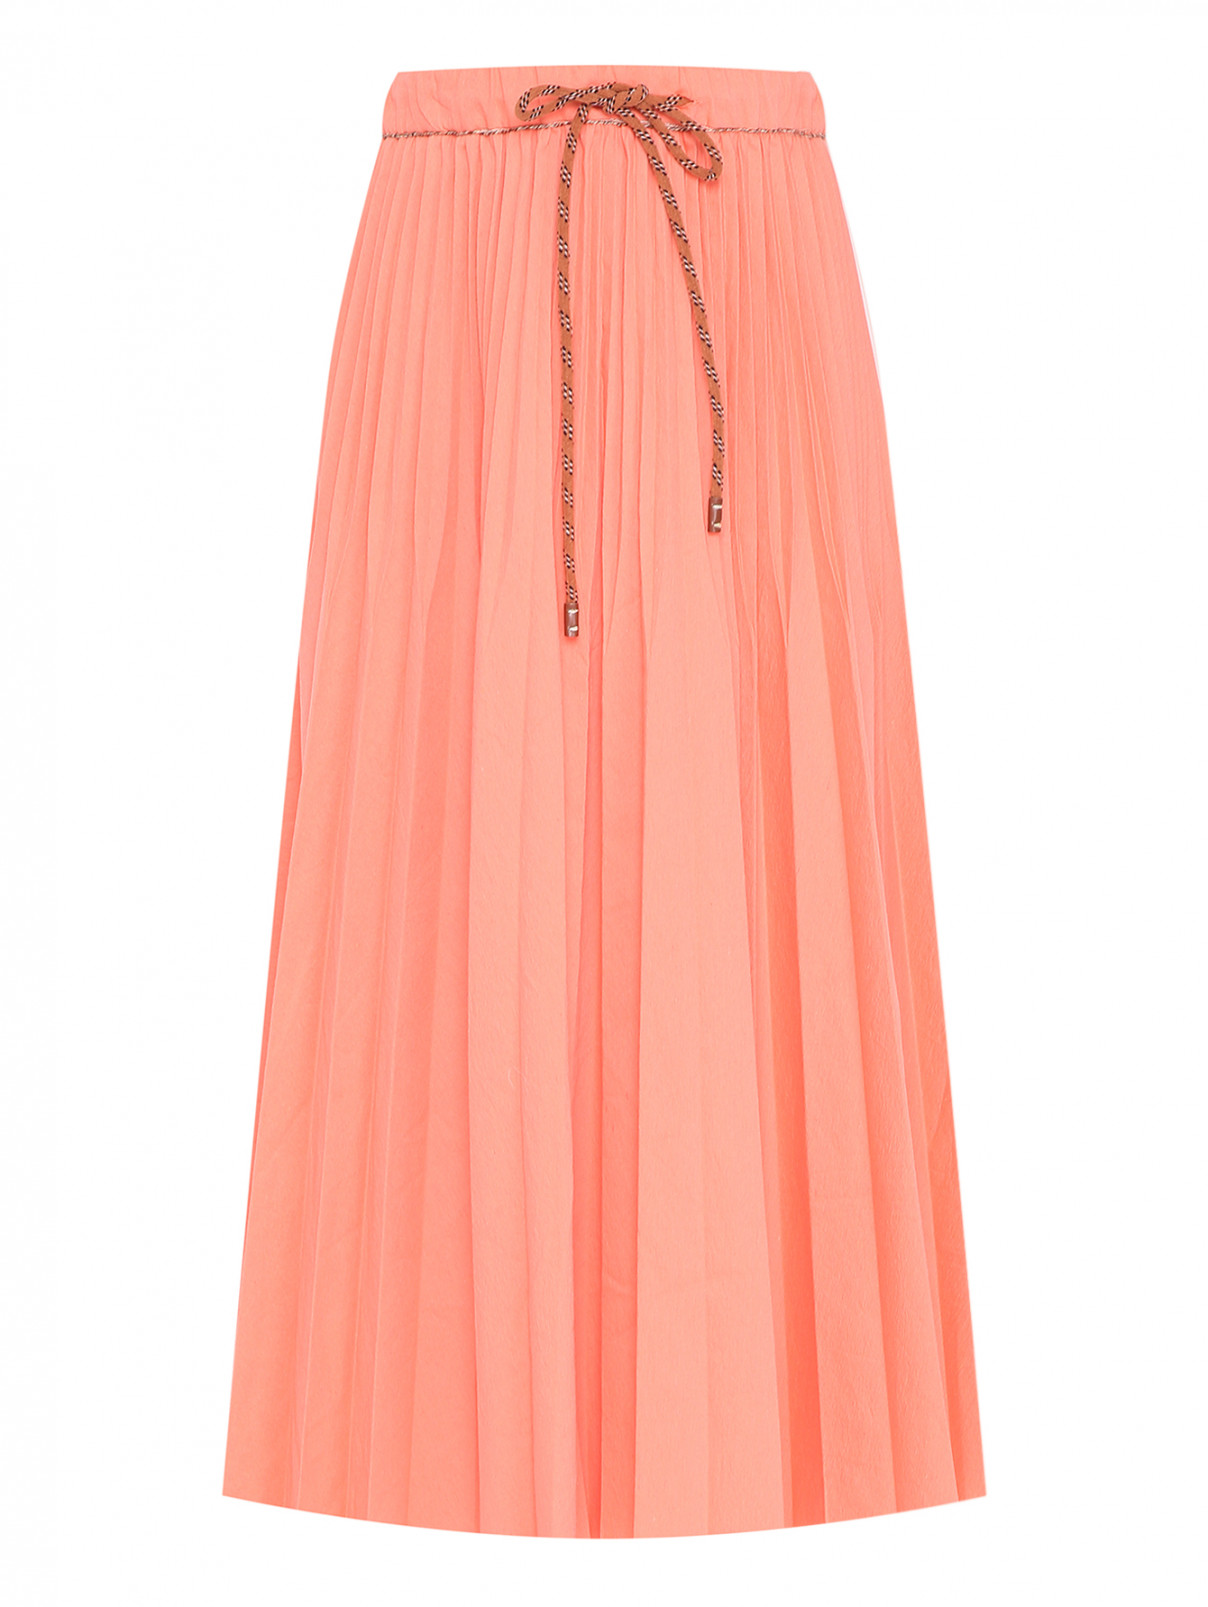 Плиссированная юбка Alysi  –  Общий вид  – Цвет:  Оранжевый